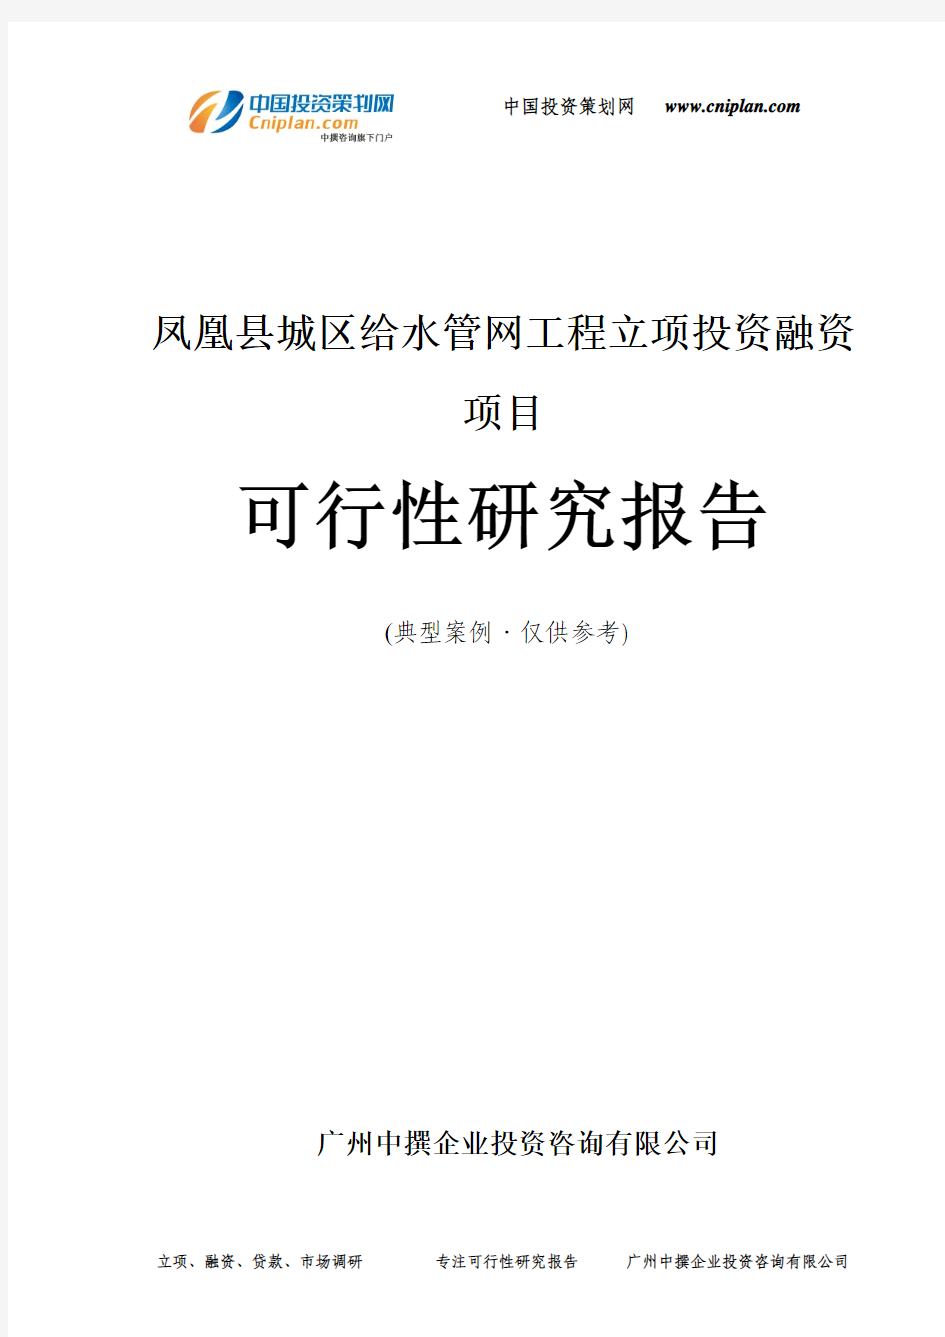 凤凰县城区给水管网工程融资投资立项项目可行性研究报告(中撰咨询)